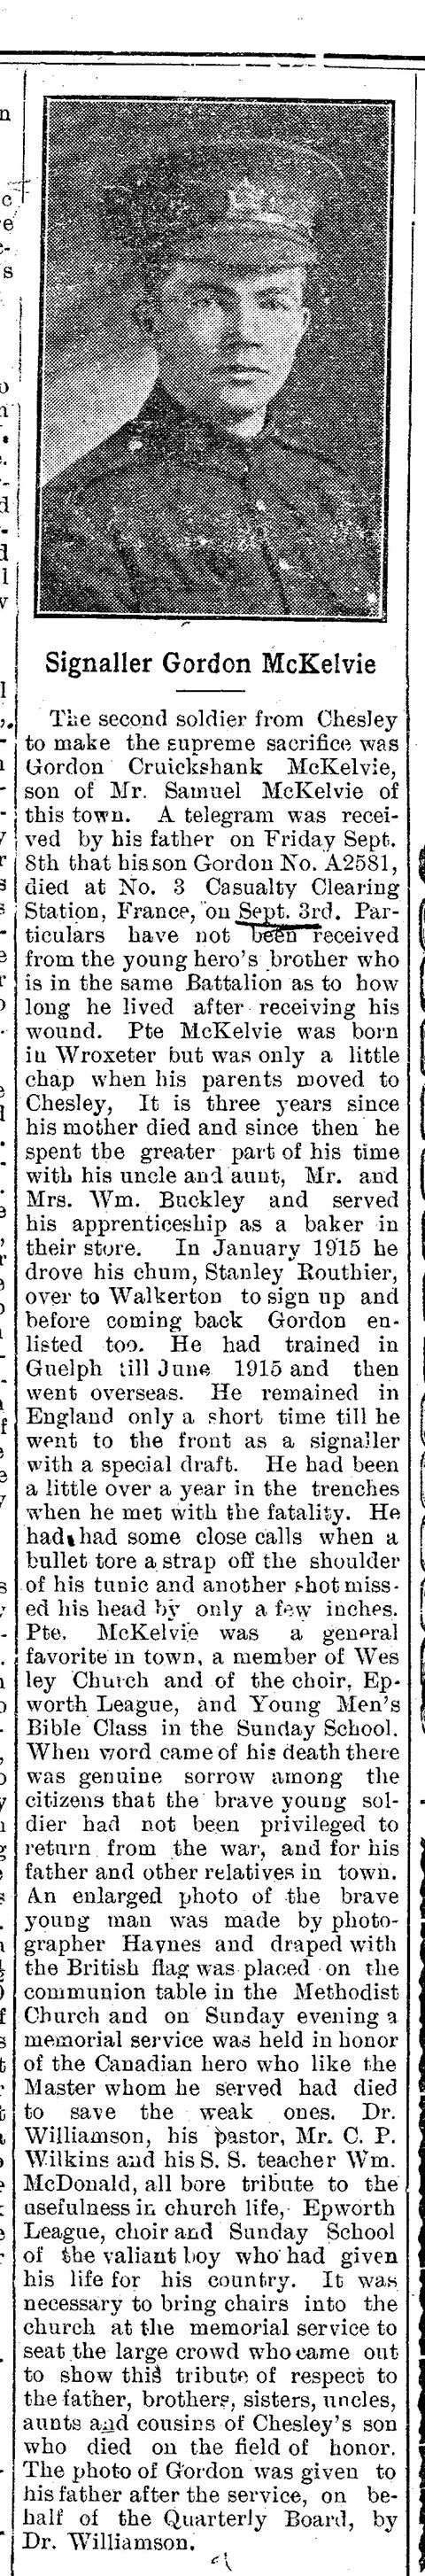 The Chesley Enterprise, September 14, 1916